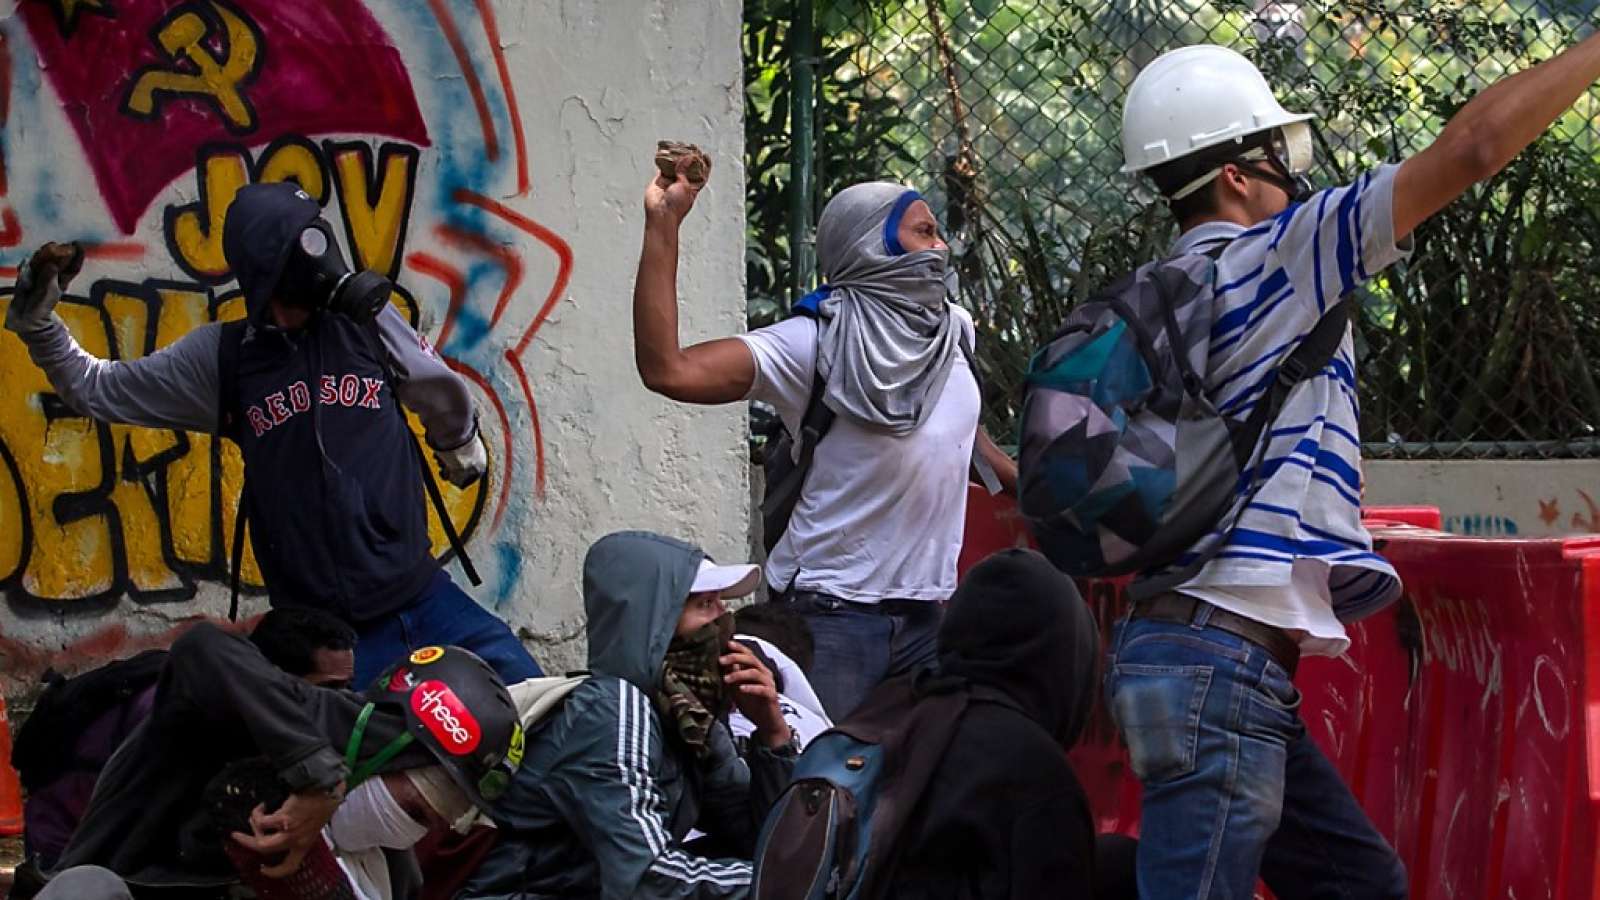 Studenten werfen Steine bei Protesten gegen den venezolanischen Präsidenten Maduro in Caracas. Sie fordern sofortige Neuwahlen.